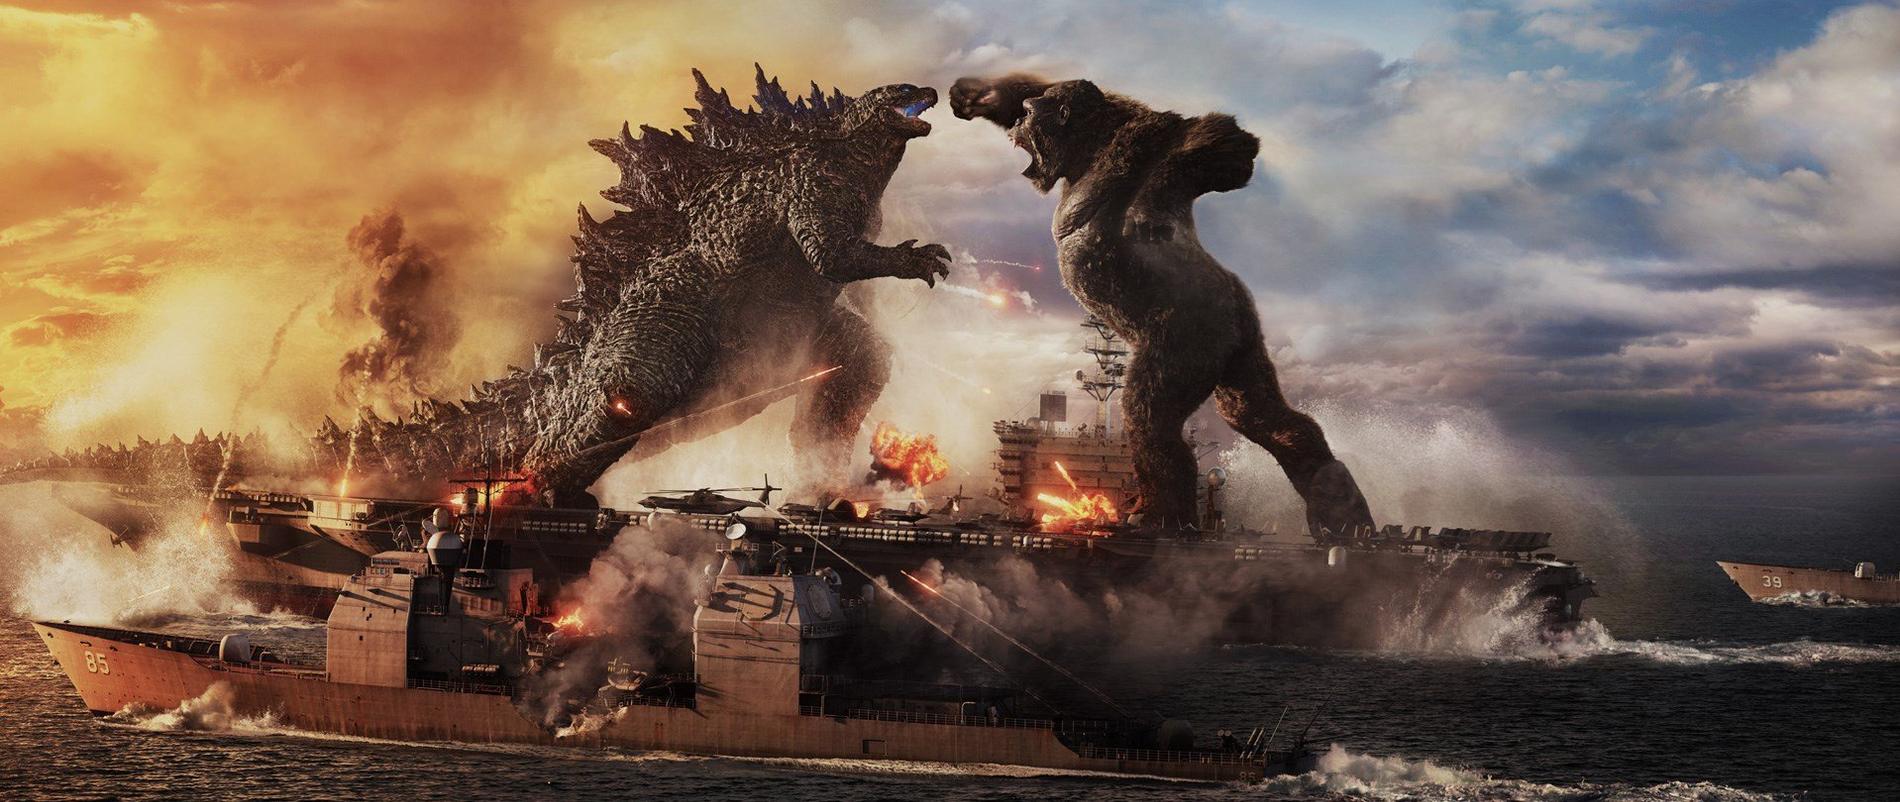 ”Godzilla vs Kong”.